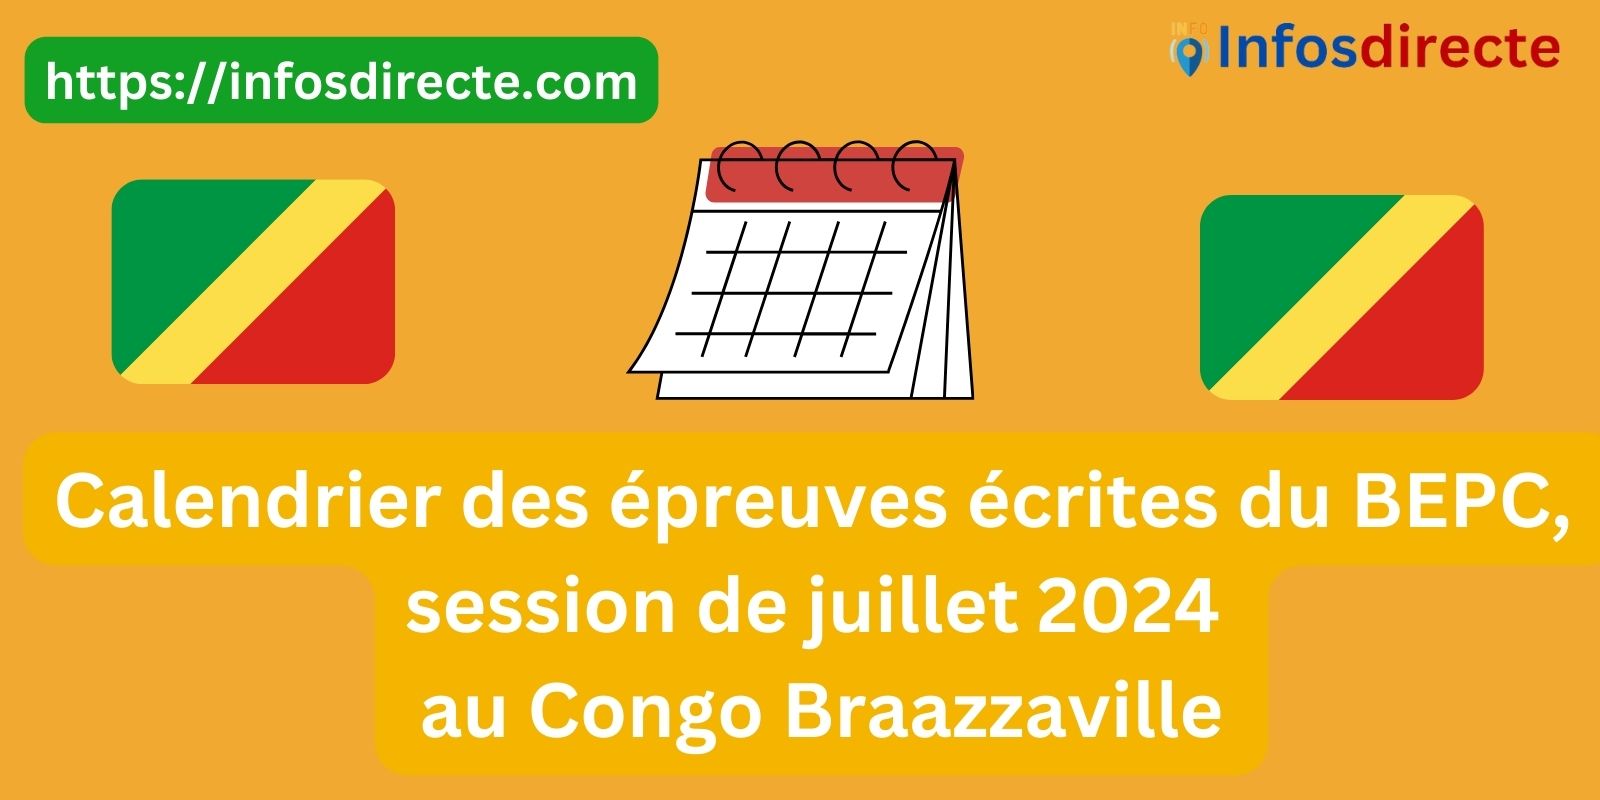 Calendrier des épreuves écrites du BEPC, session de juillet 2024 au Congo Braazzaville